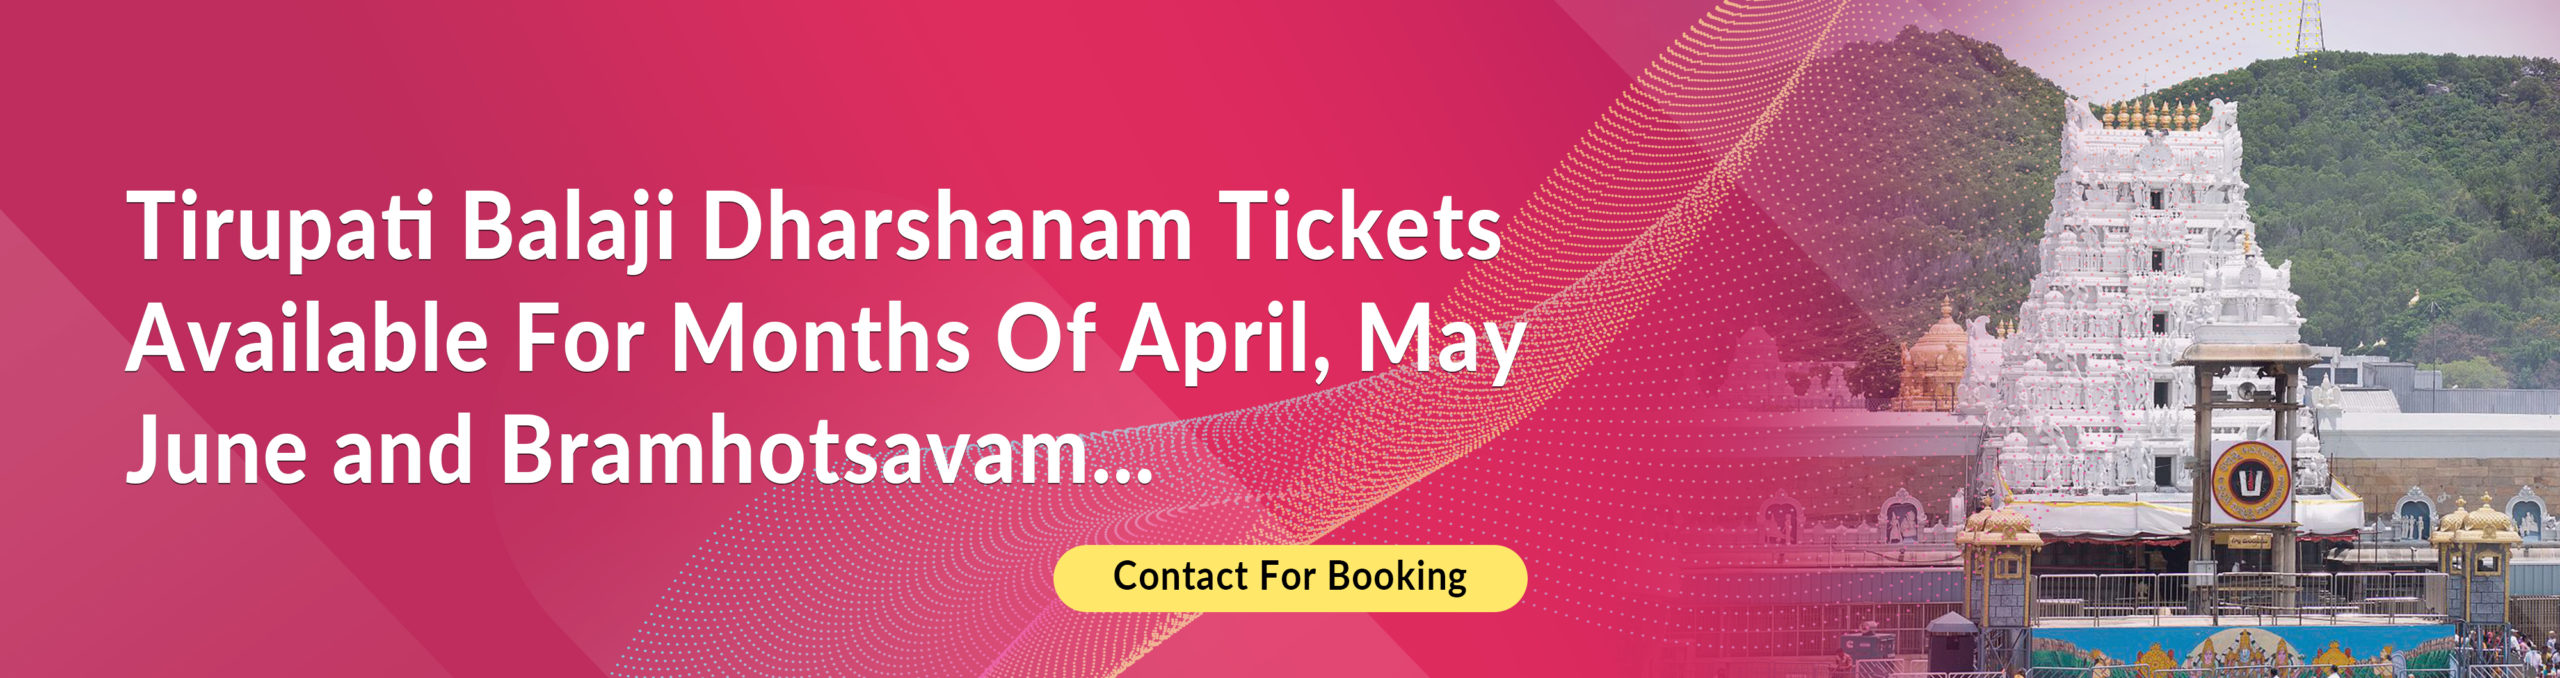 Tirupathi Darshan Ticket Booking Service